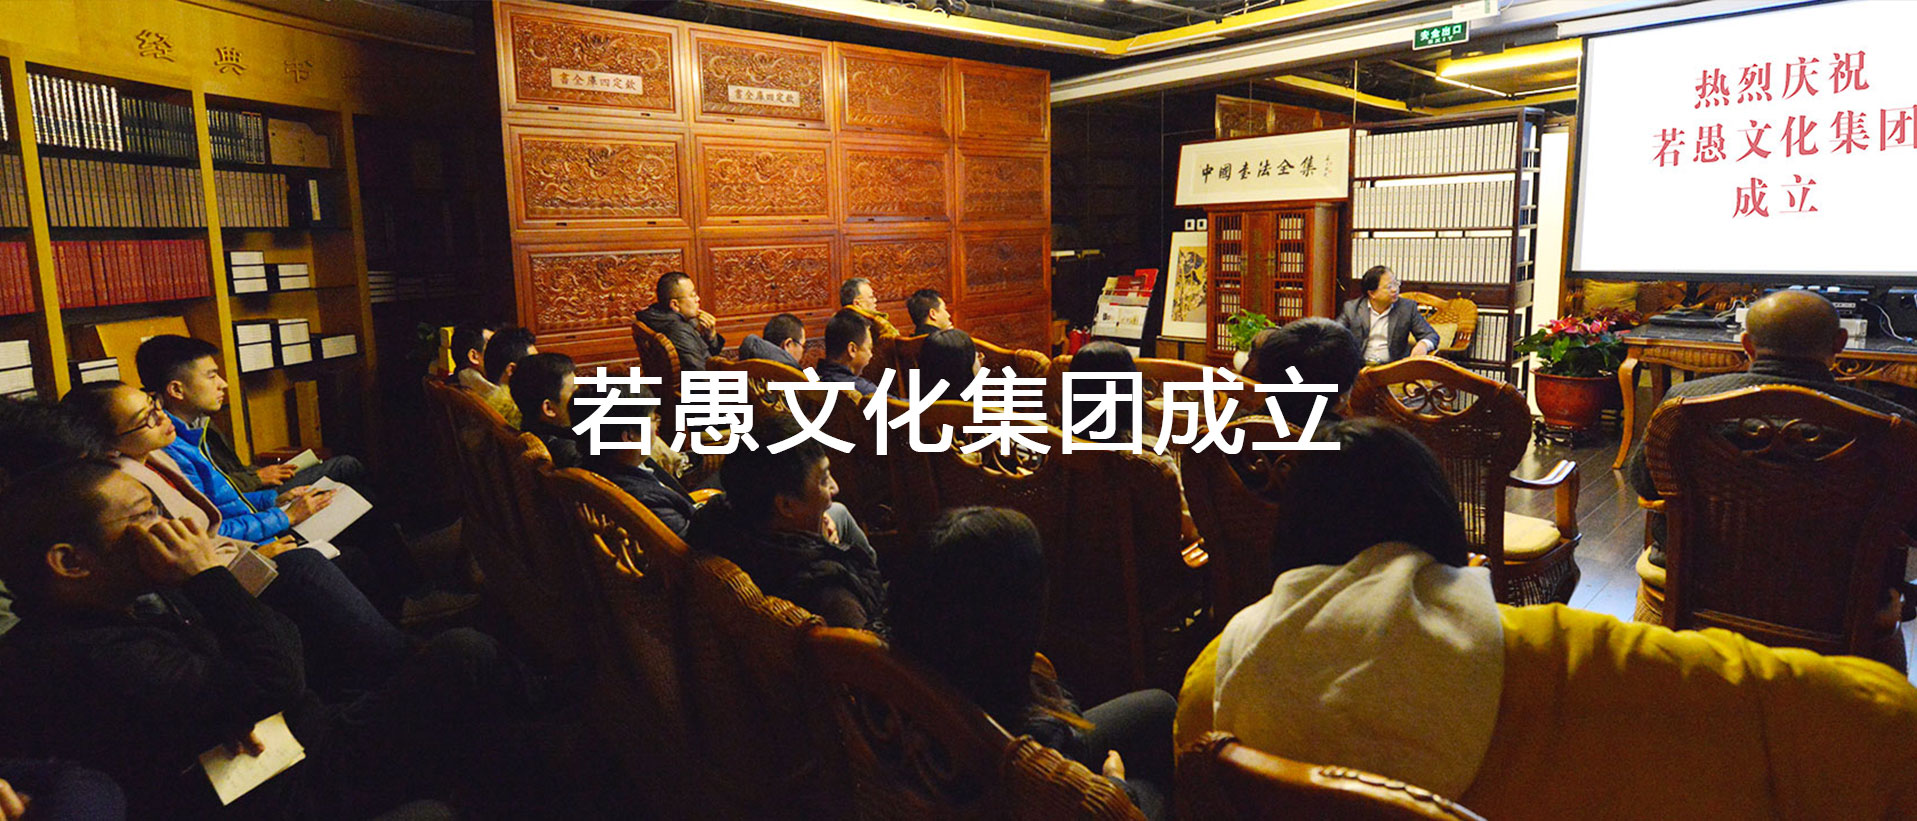 北京若愚文化集团有限公司正式成立